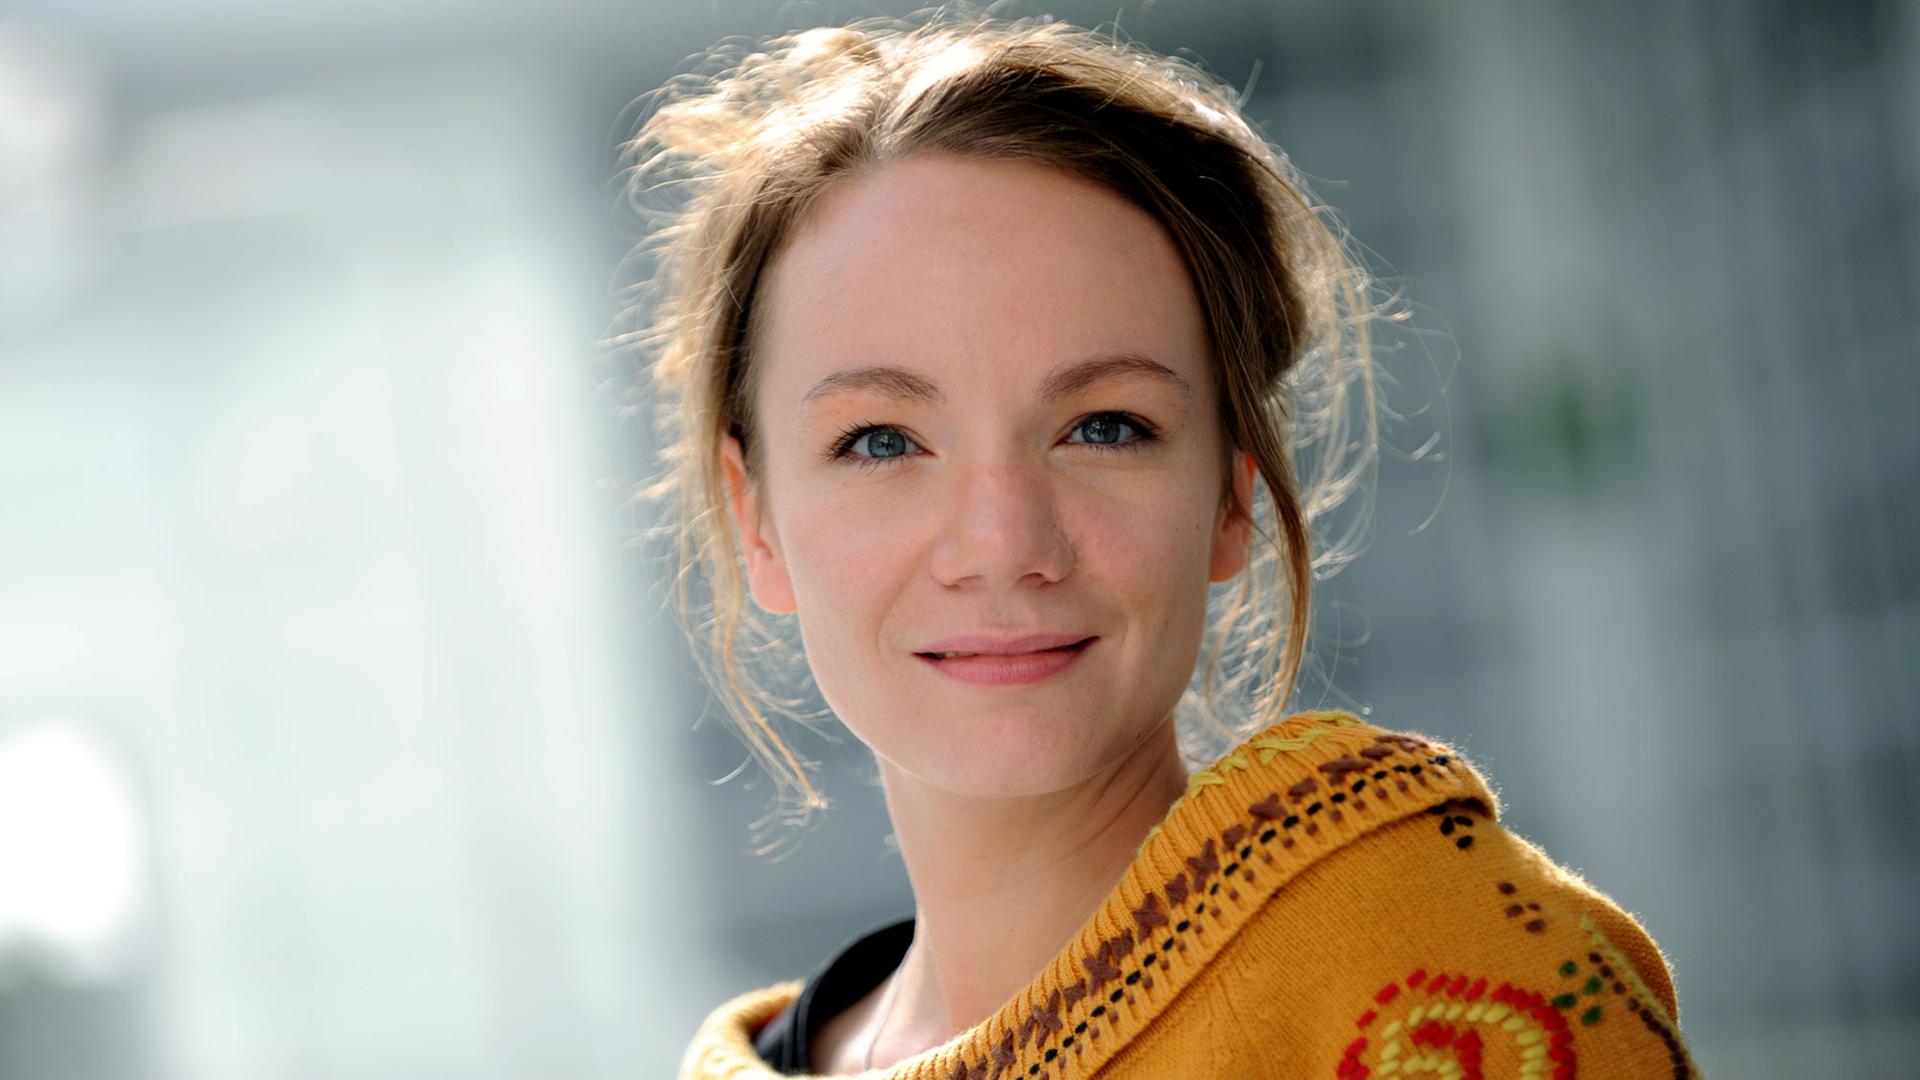 Porträtaufnahme einer jungen Frau, die einen gelben Pullover trägt und in die Kamera lächelt.